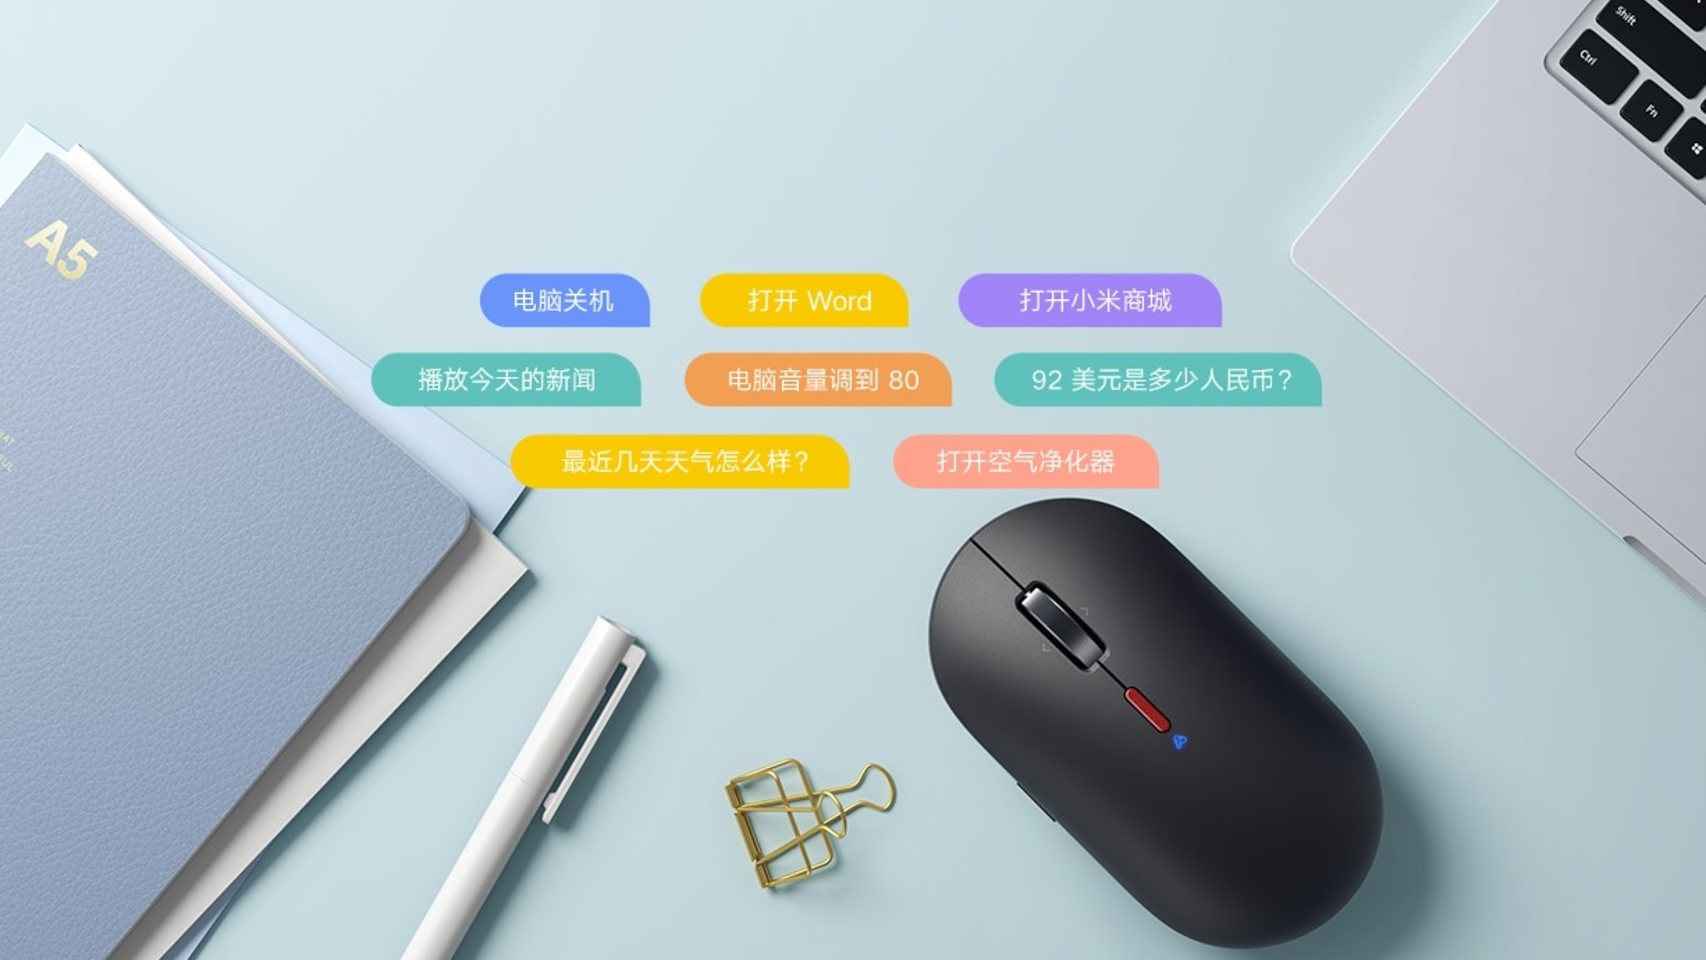 El ratón de Xiaomi acepta todo tipo de comandos para controlar el PC con la voz